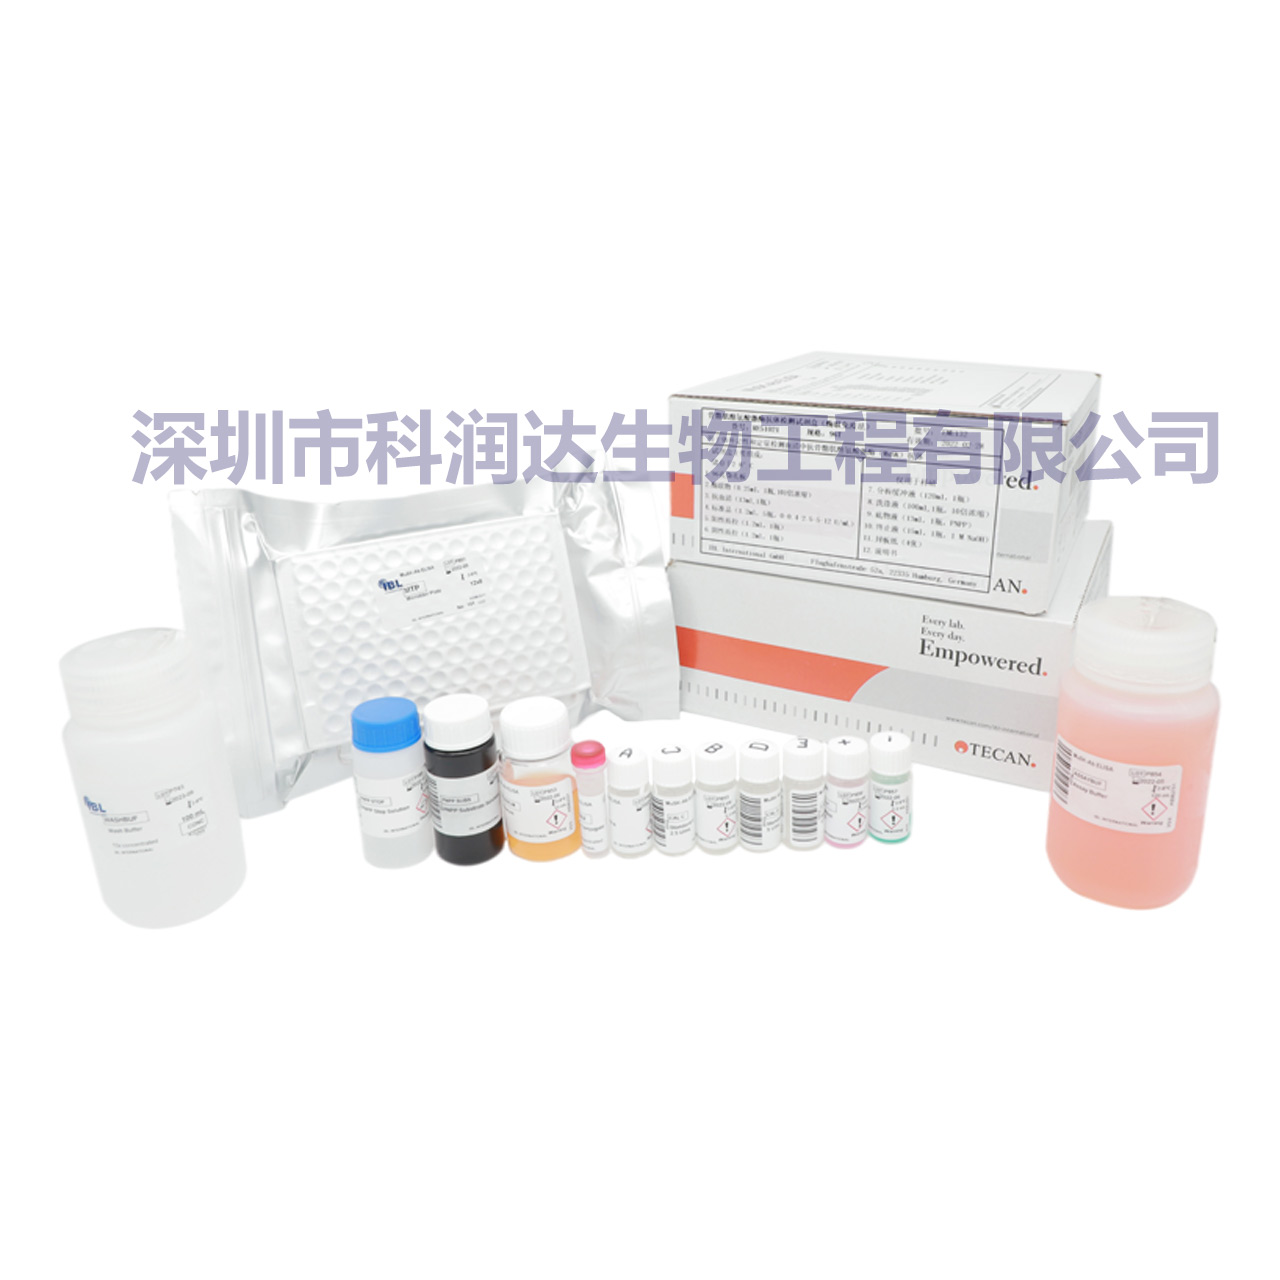 副流感IgA 1/2/3  试剂盒